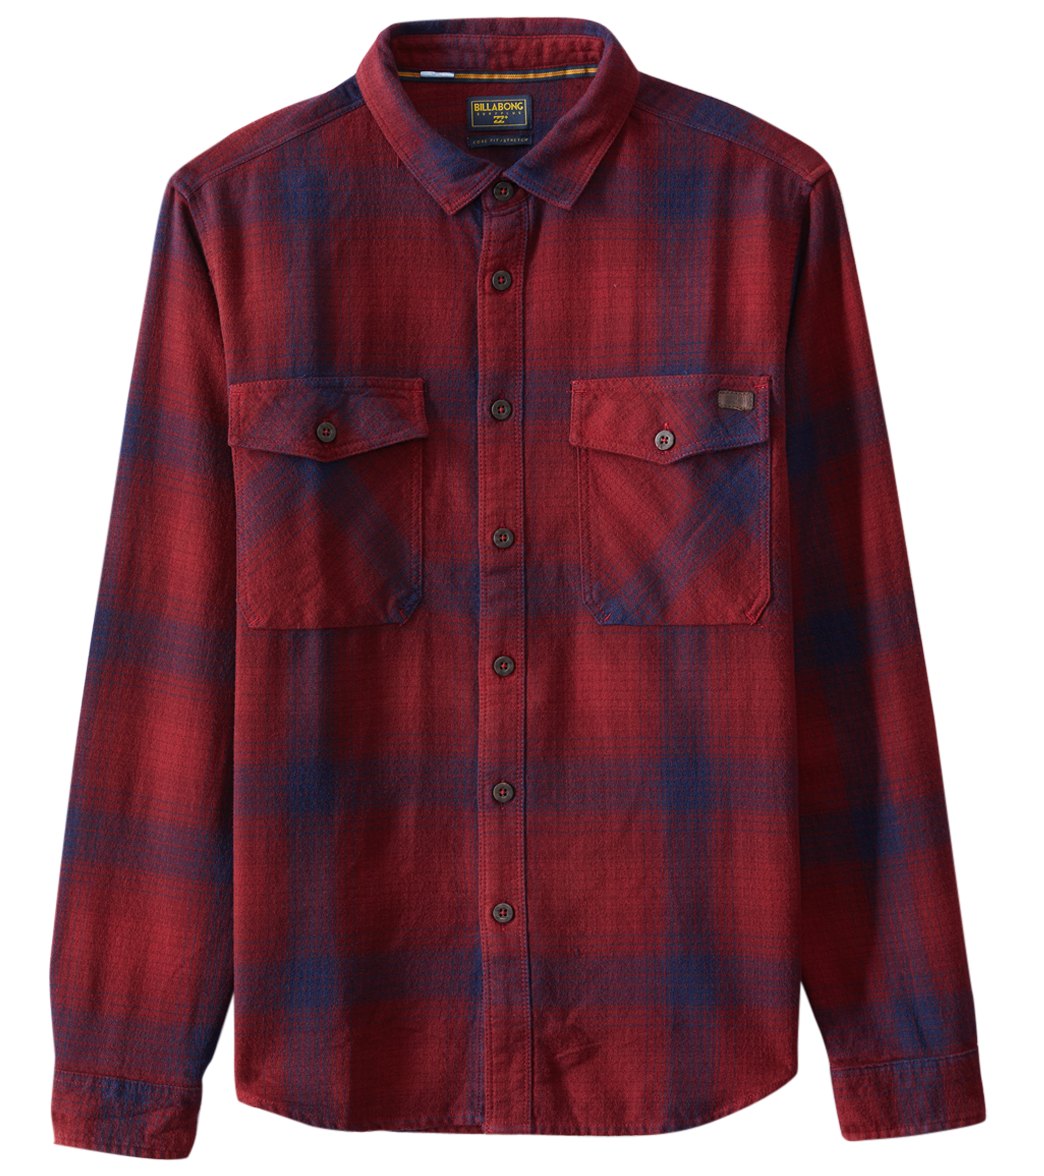 Billabong Men's Venture Long Sleeve Flannel Shirt - Red Small Cotton - Swimoutlet.com